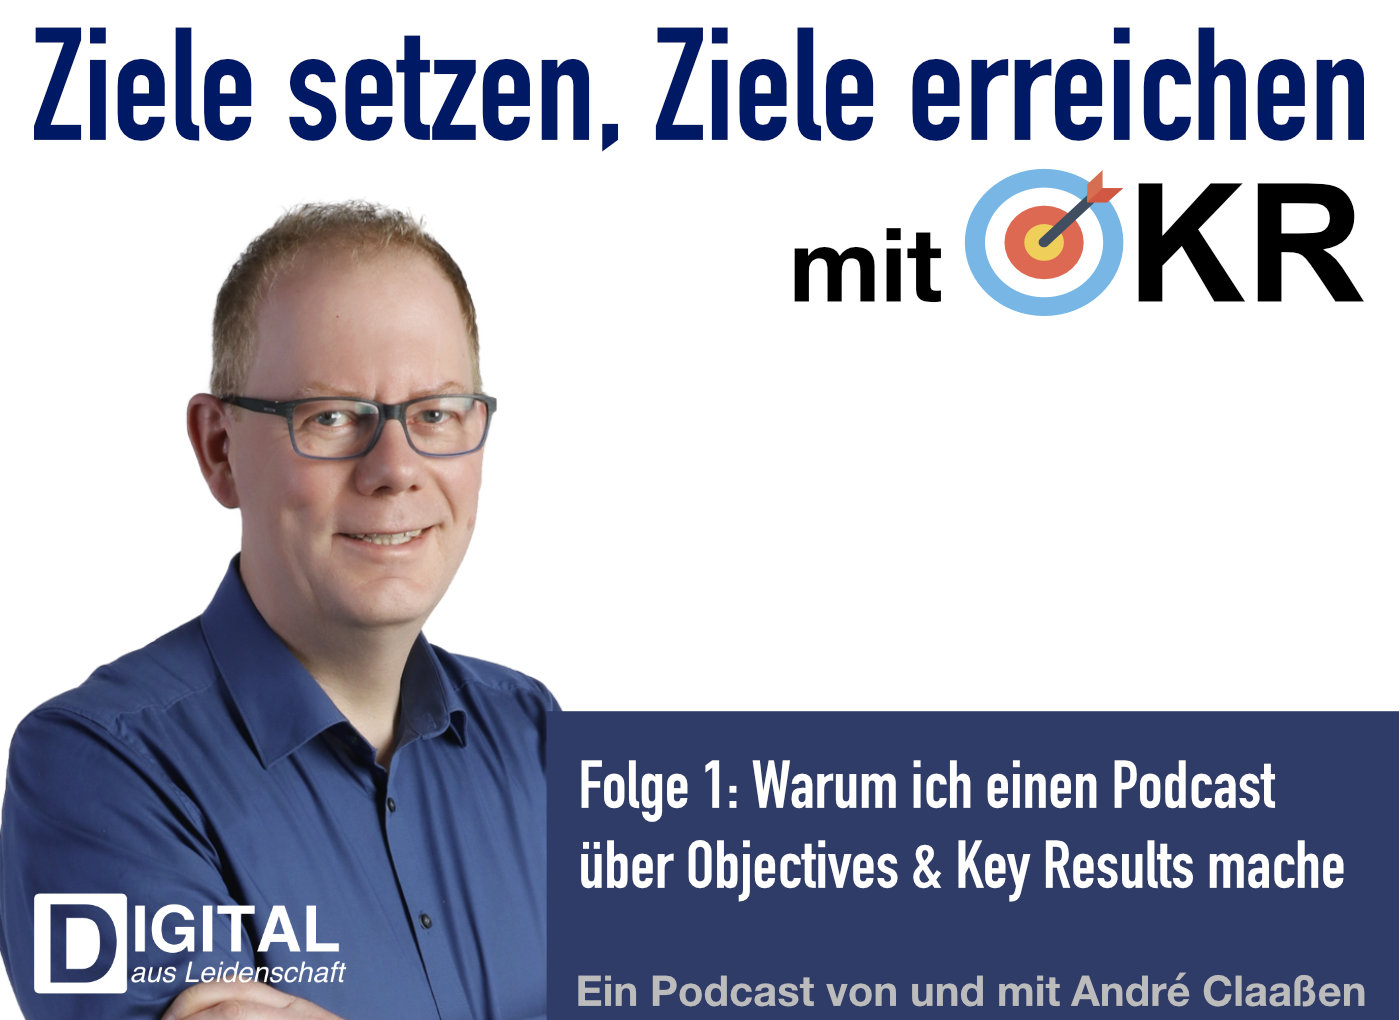 podcast/okr/okr-podcast-episode-1-warum-ich-diesen-podcast-mache-und-was-du-davon-hast/okr-podcast-cover.jpg